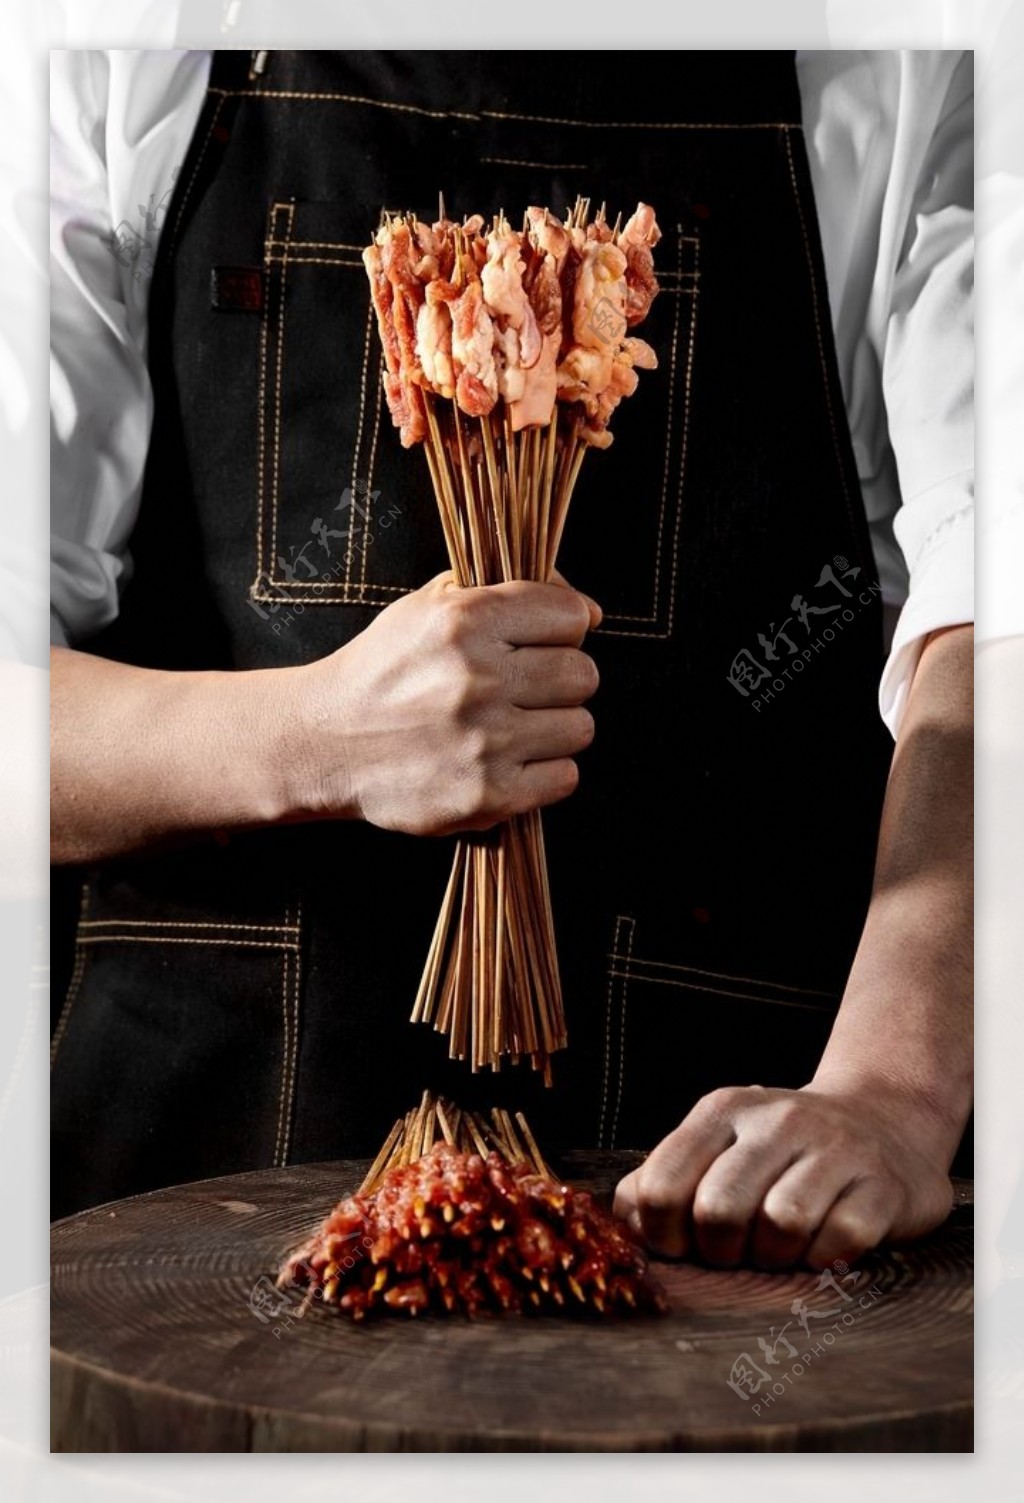 烤肉串图片